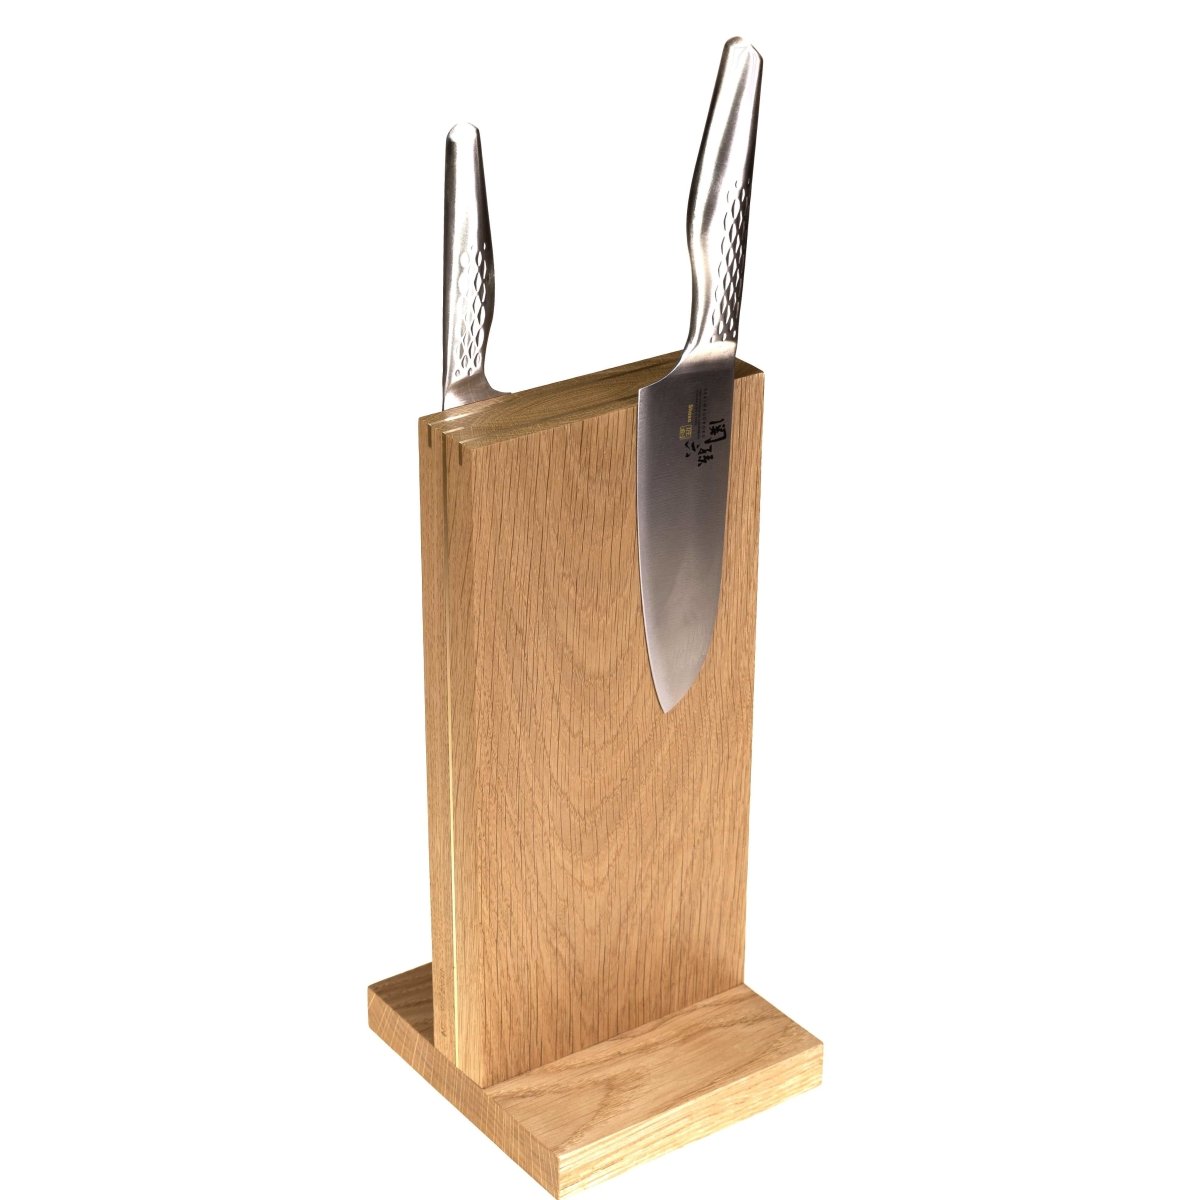 The Monolith magnetisk knivblok - Rune-Jakobsen Design - 25x30cm / Røget eg / Alu